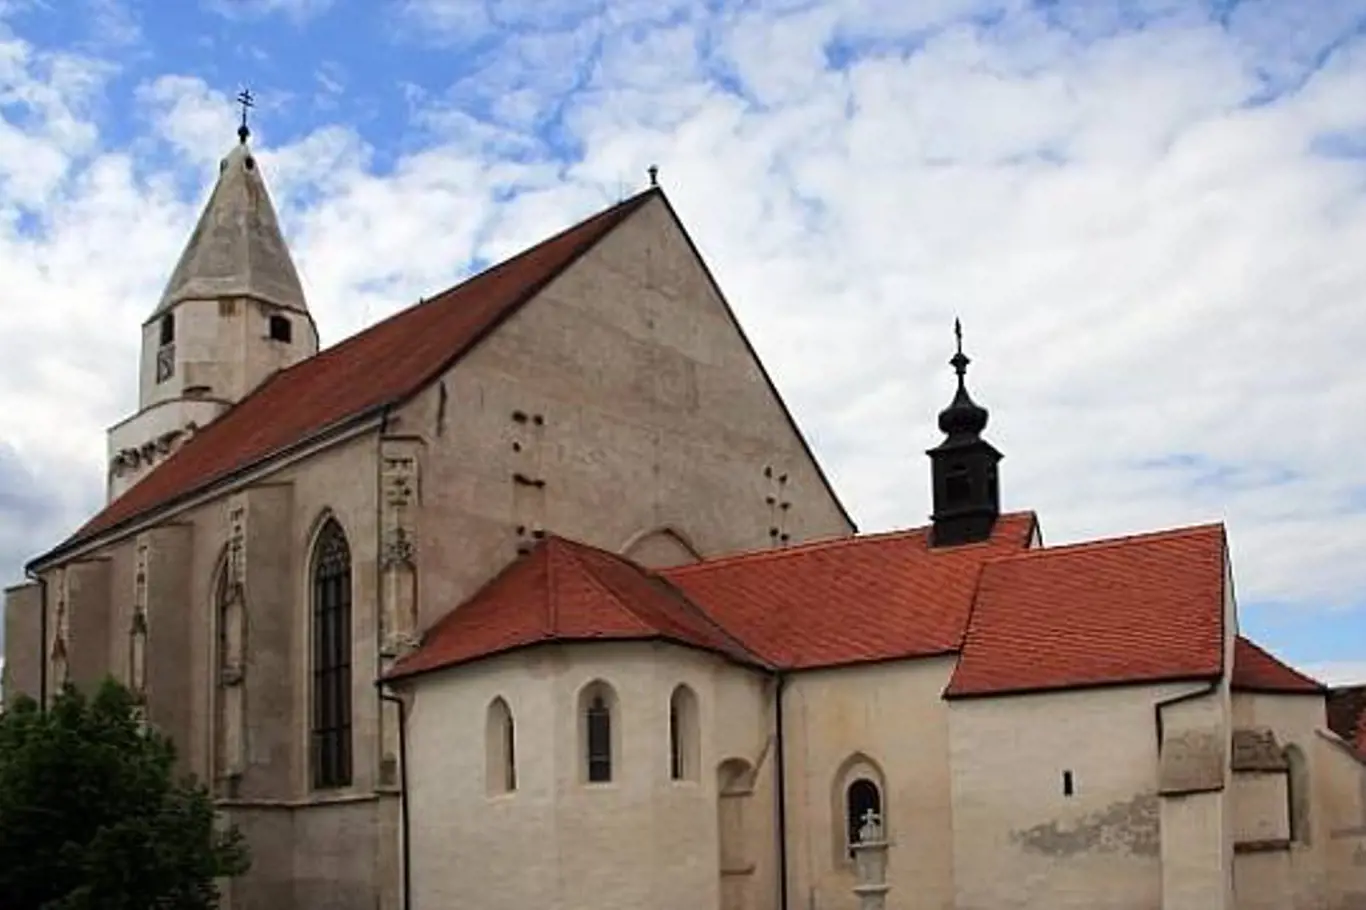 Kostel v Hnanicích: je nejoriginálnější sakrální stavbou v Česku